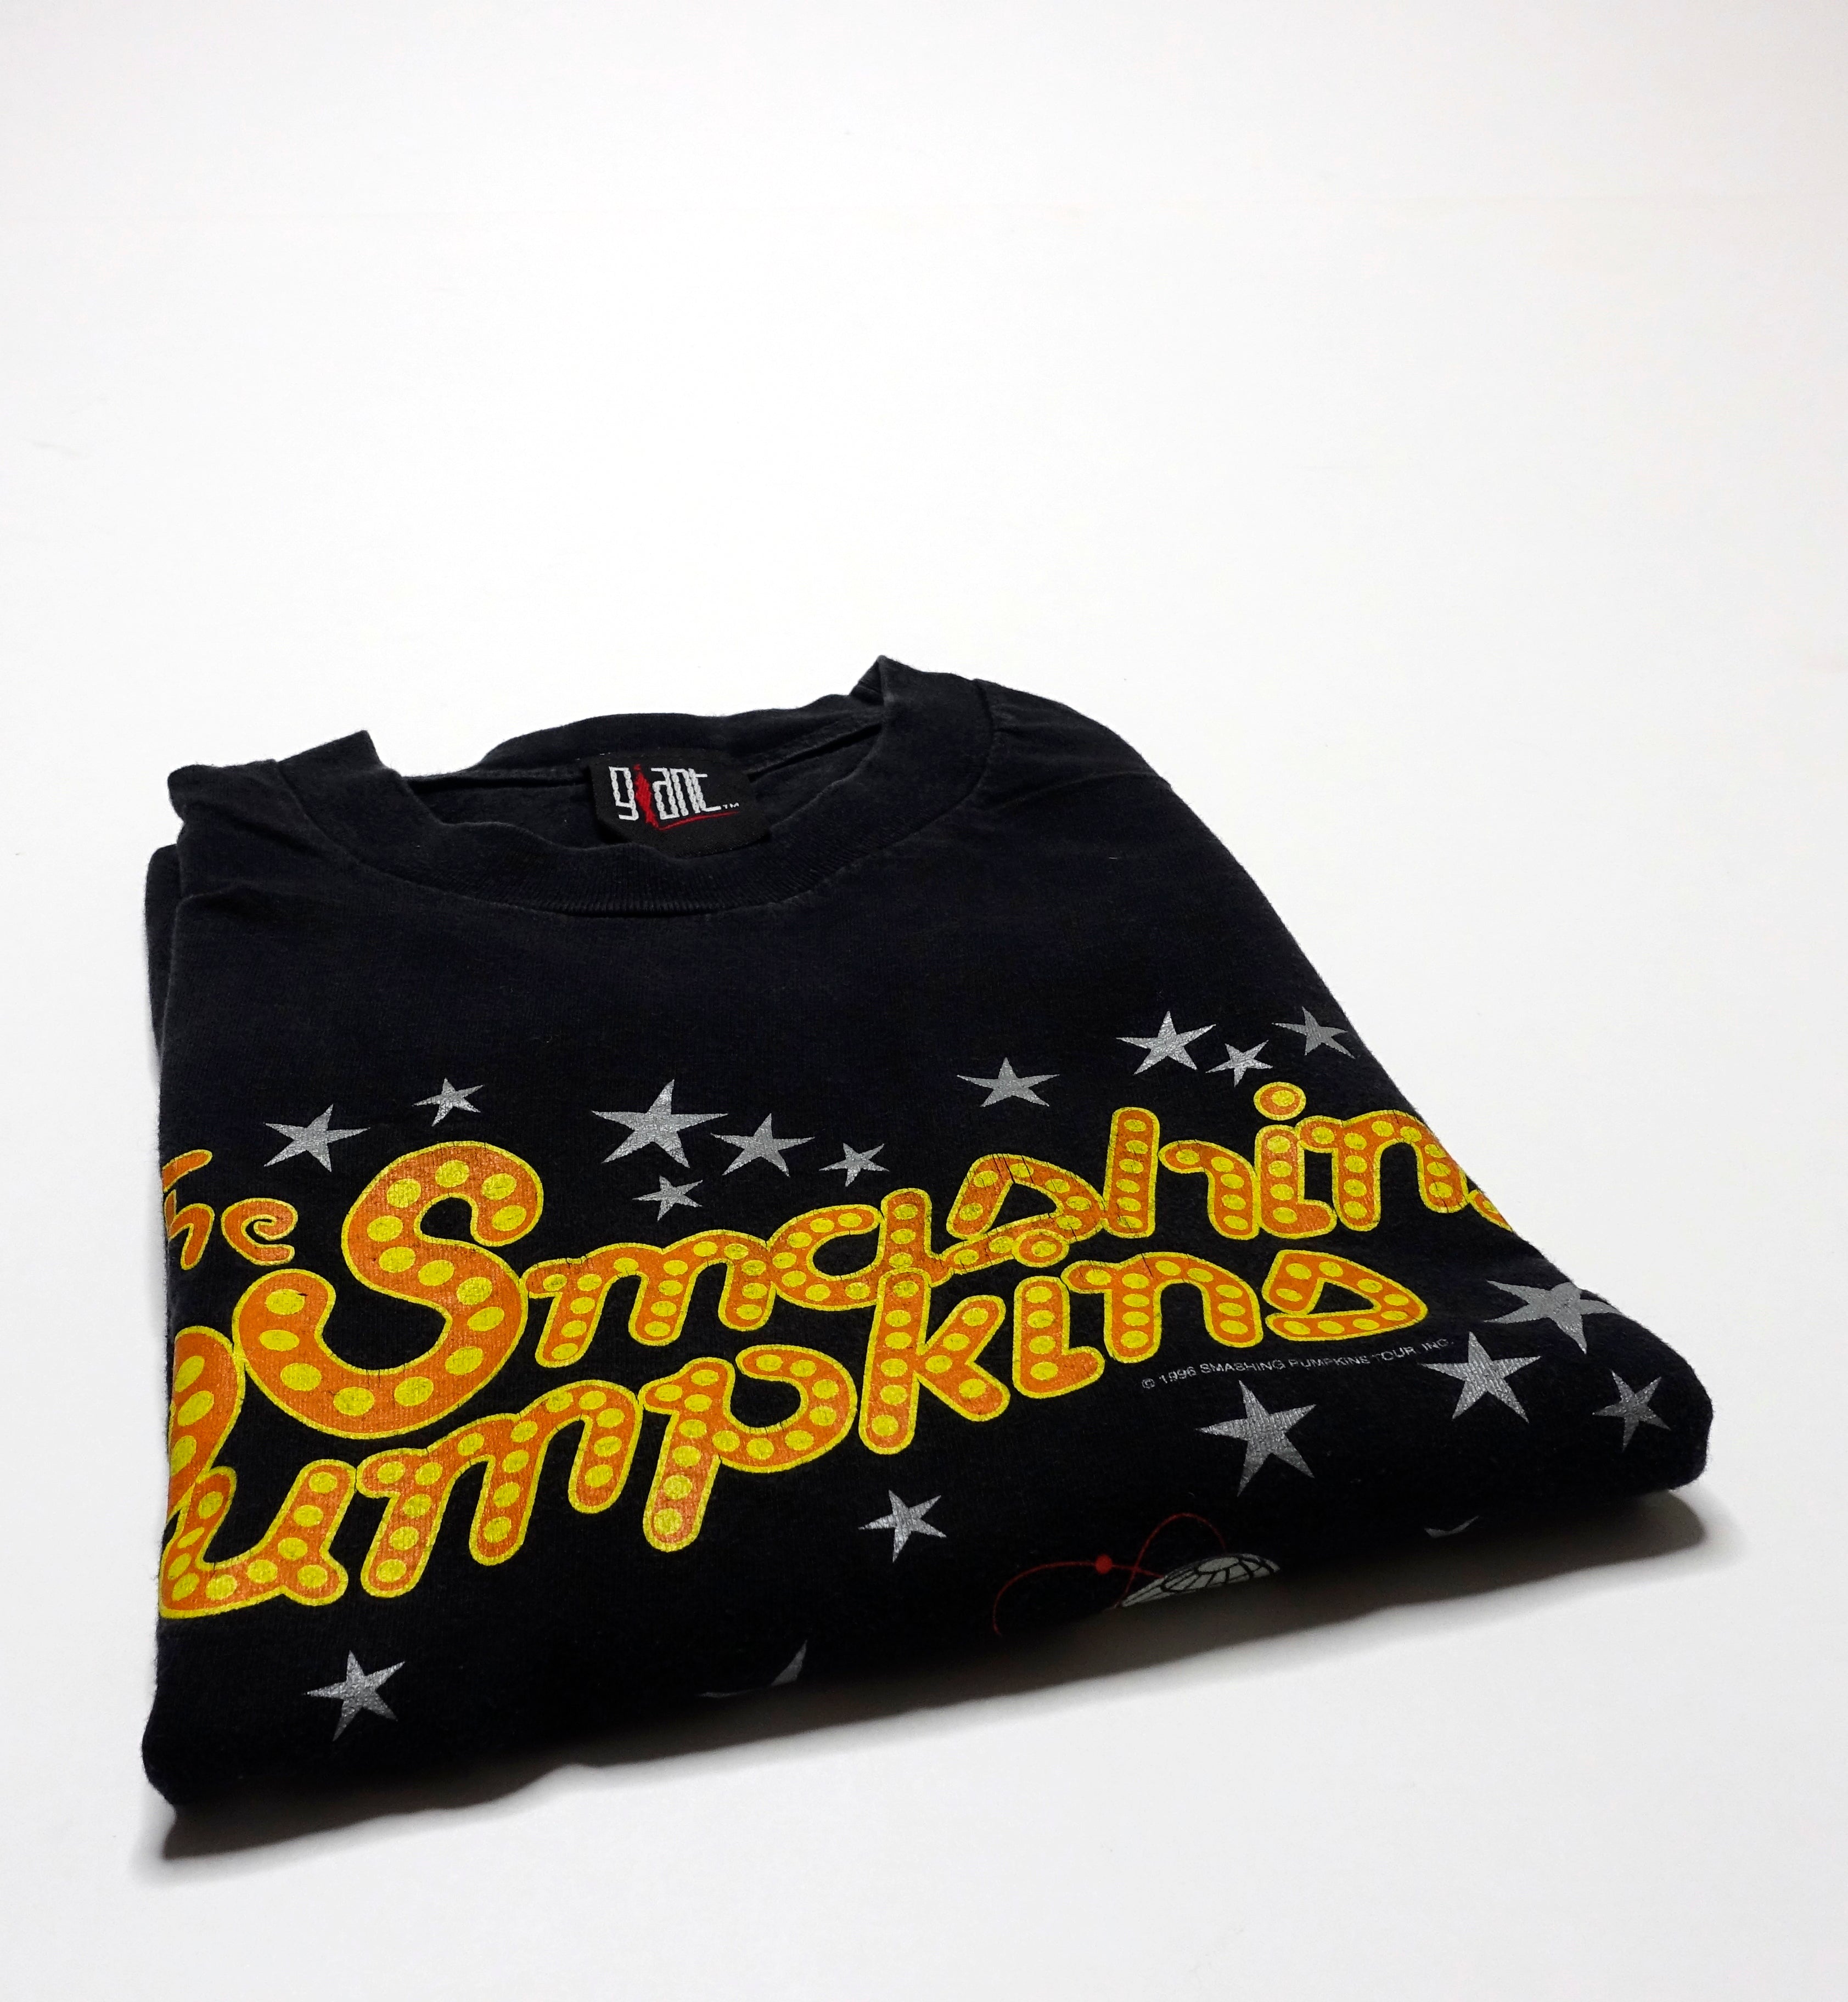 Smashing Pumpkins - Spaceboy 1996 Tour Shirt Size XL